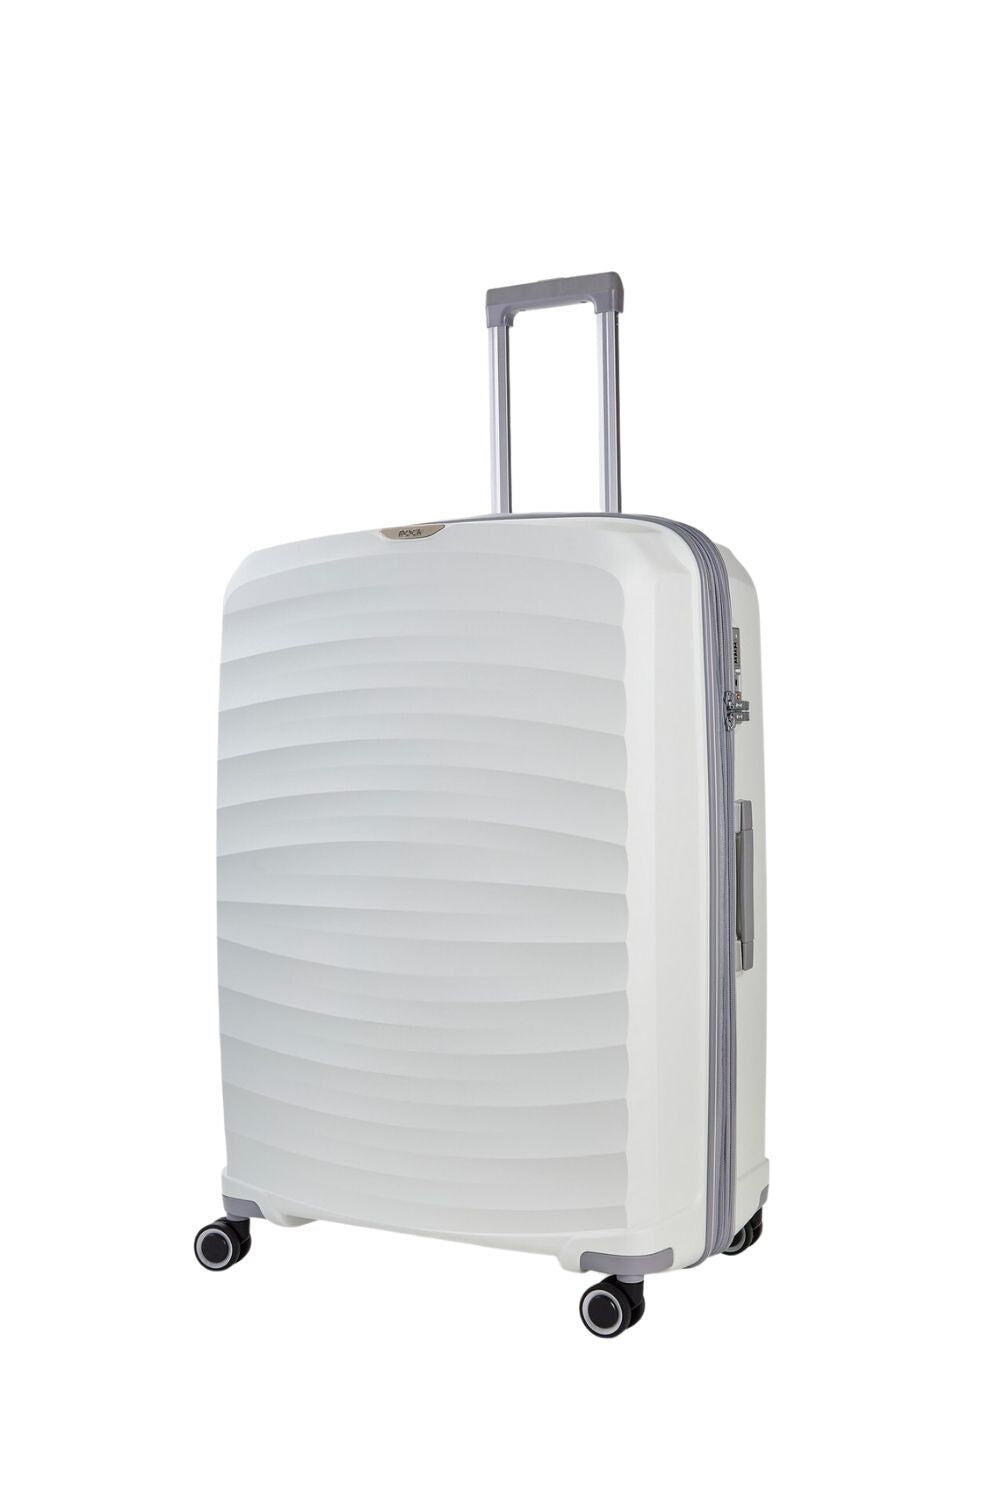 ROCK Sunwave 8 Wheel Hardshell Expandable Suitcase Large